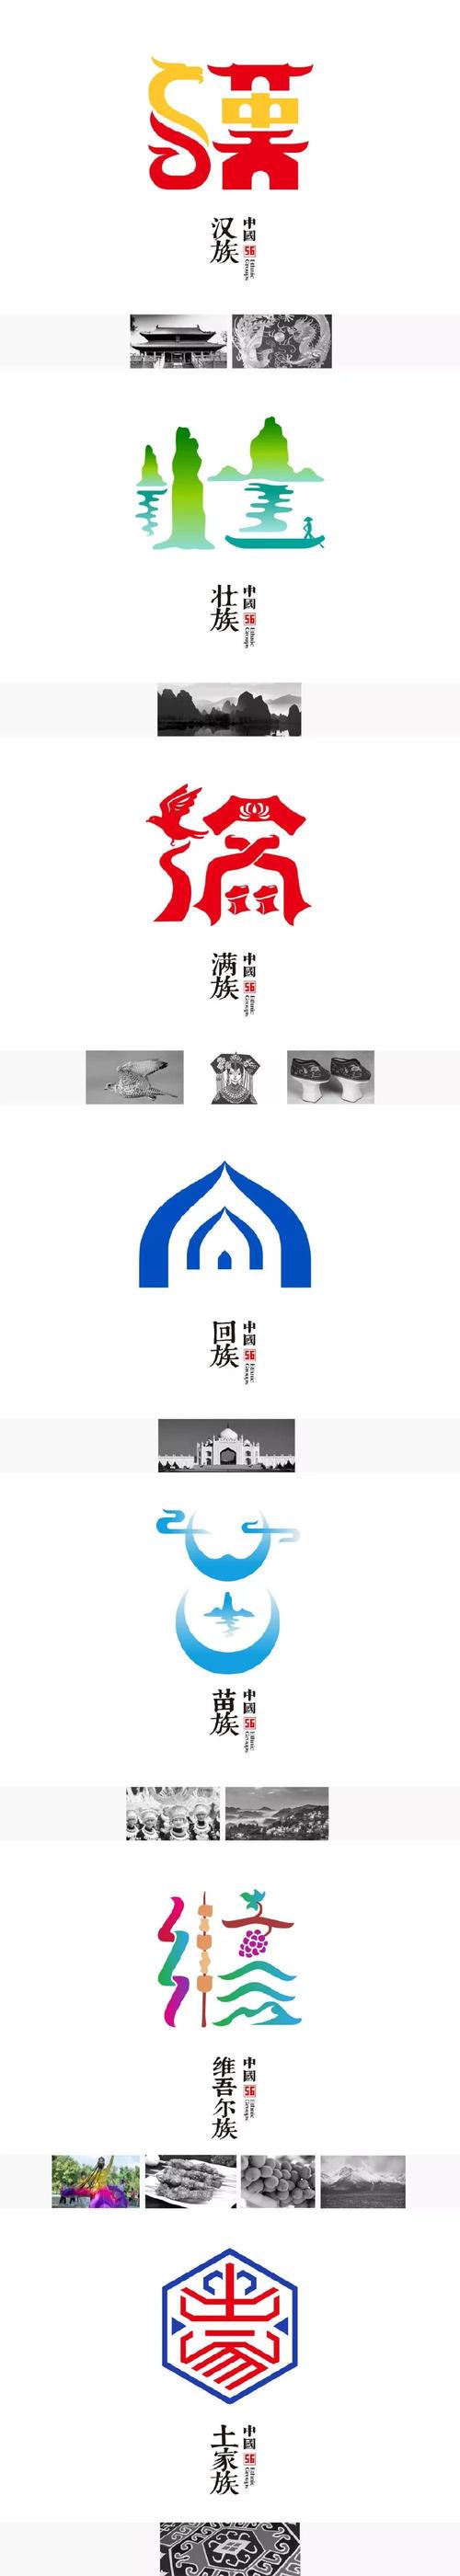 80后设计师林翔创作一系列最美56民族标志